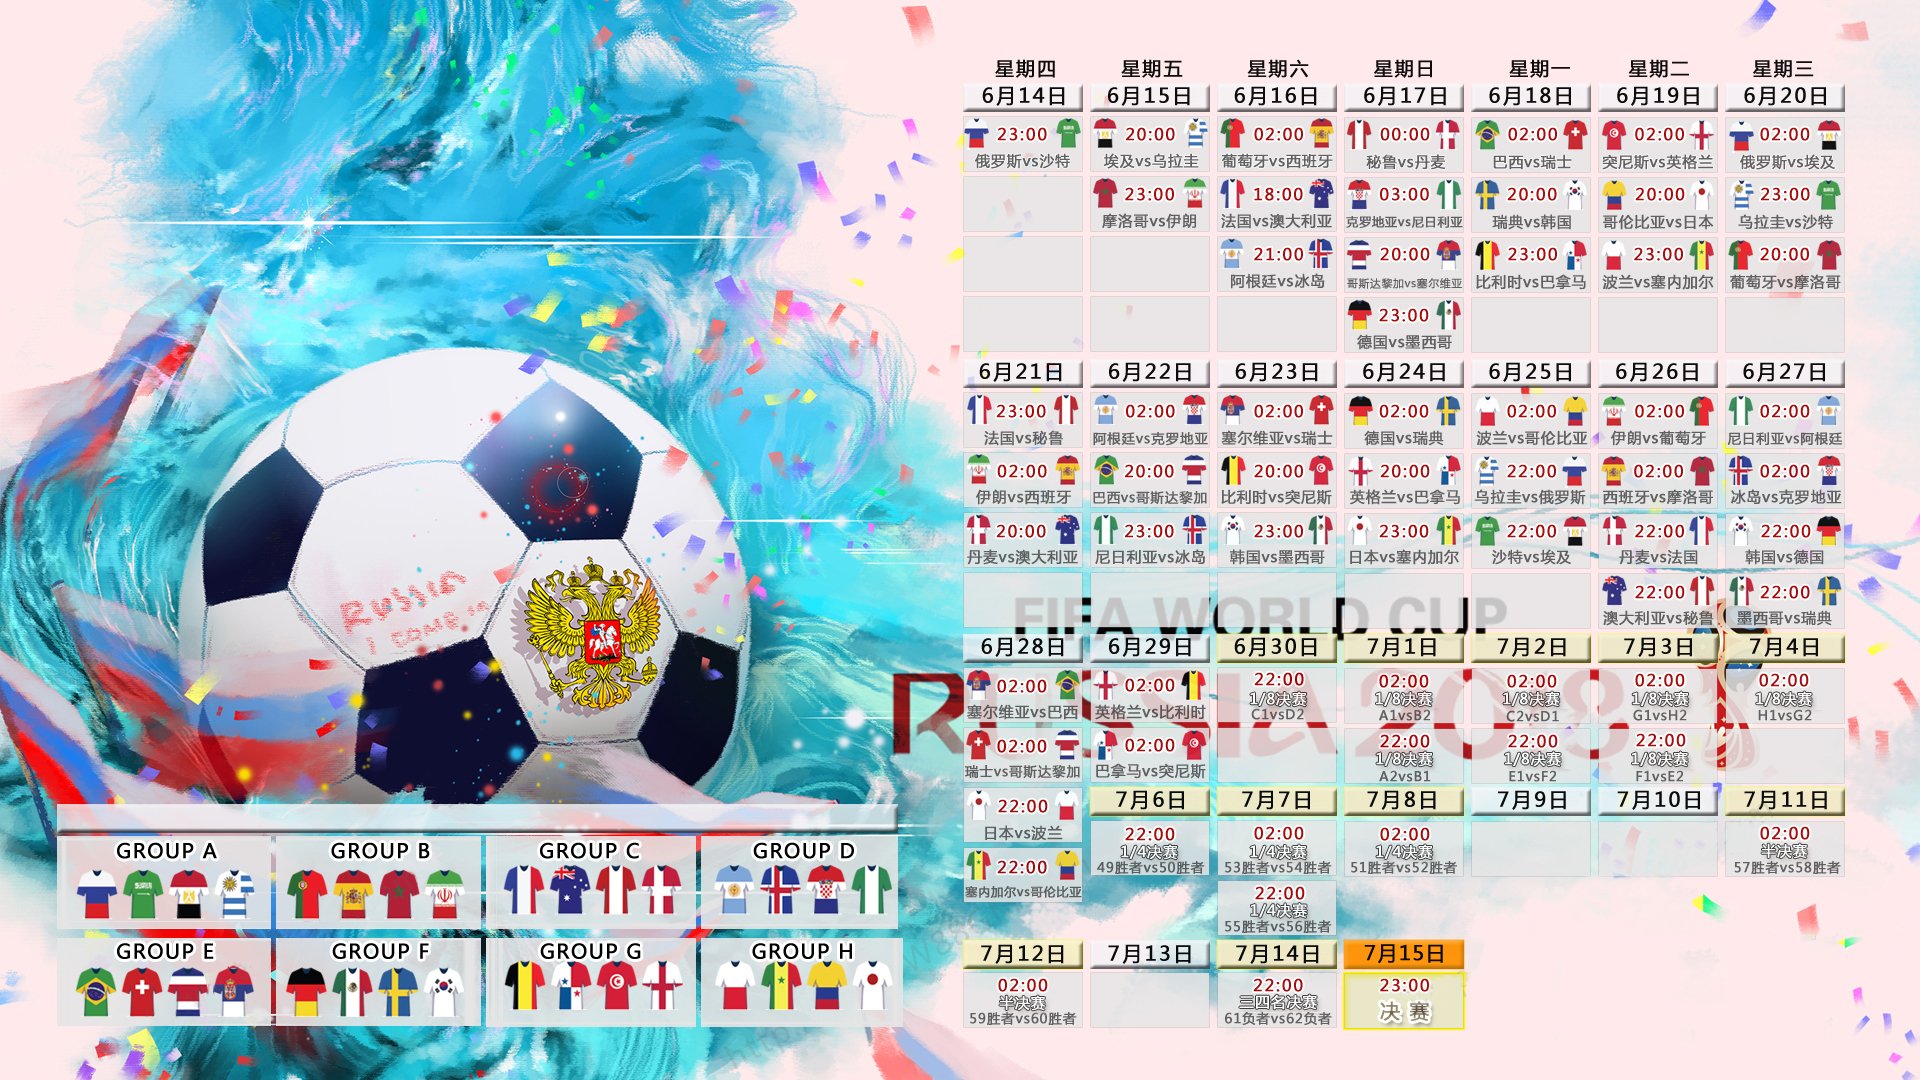 世界杯日本分在哪个小组 世界杯 日本队